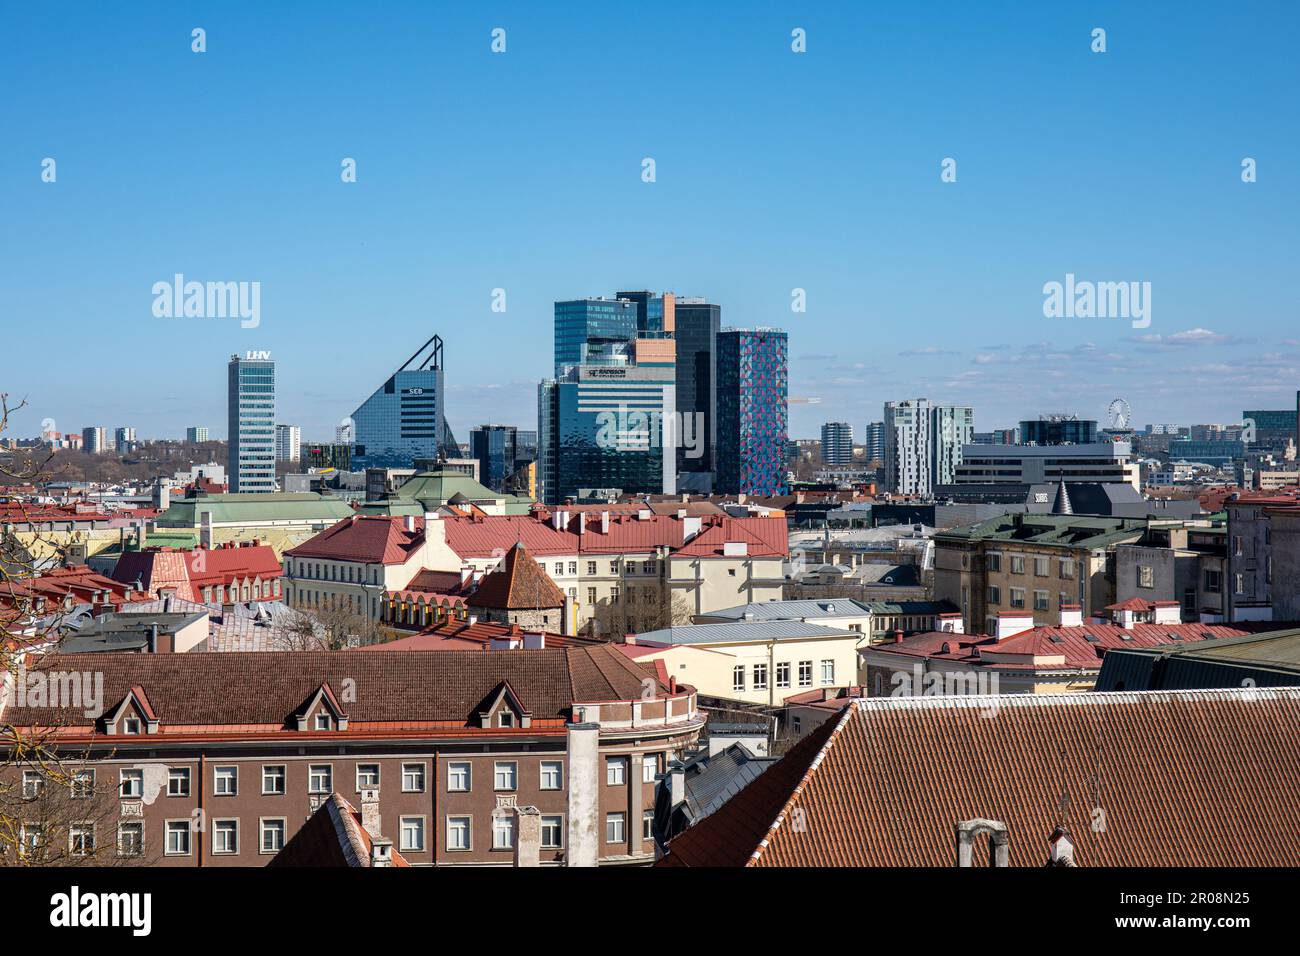 Le quartier de Maakri s'étend sur un ciel bleu clair, au-dessus des toits de Vanalinn, par une journée ensoleillée à Tallinn, en Estonie Banque D'Images